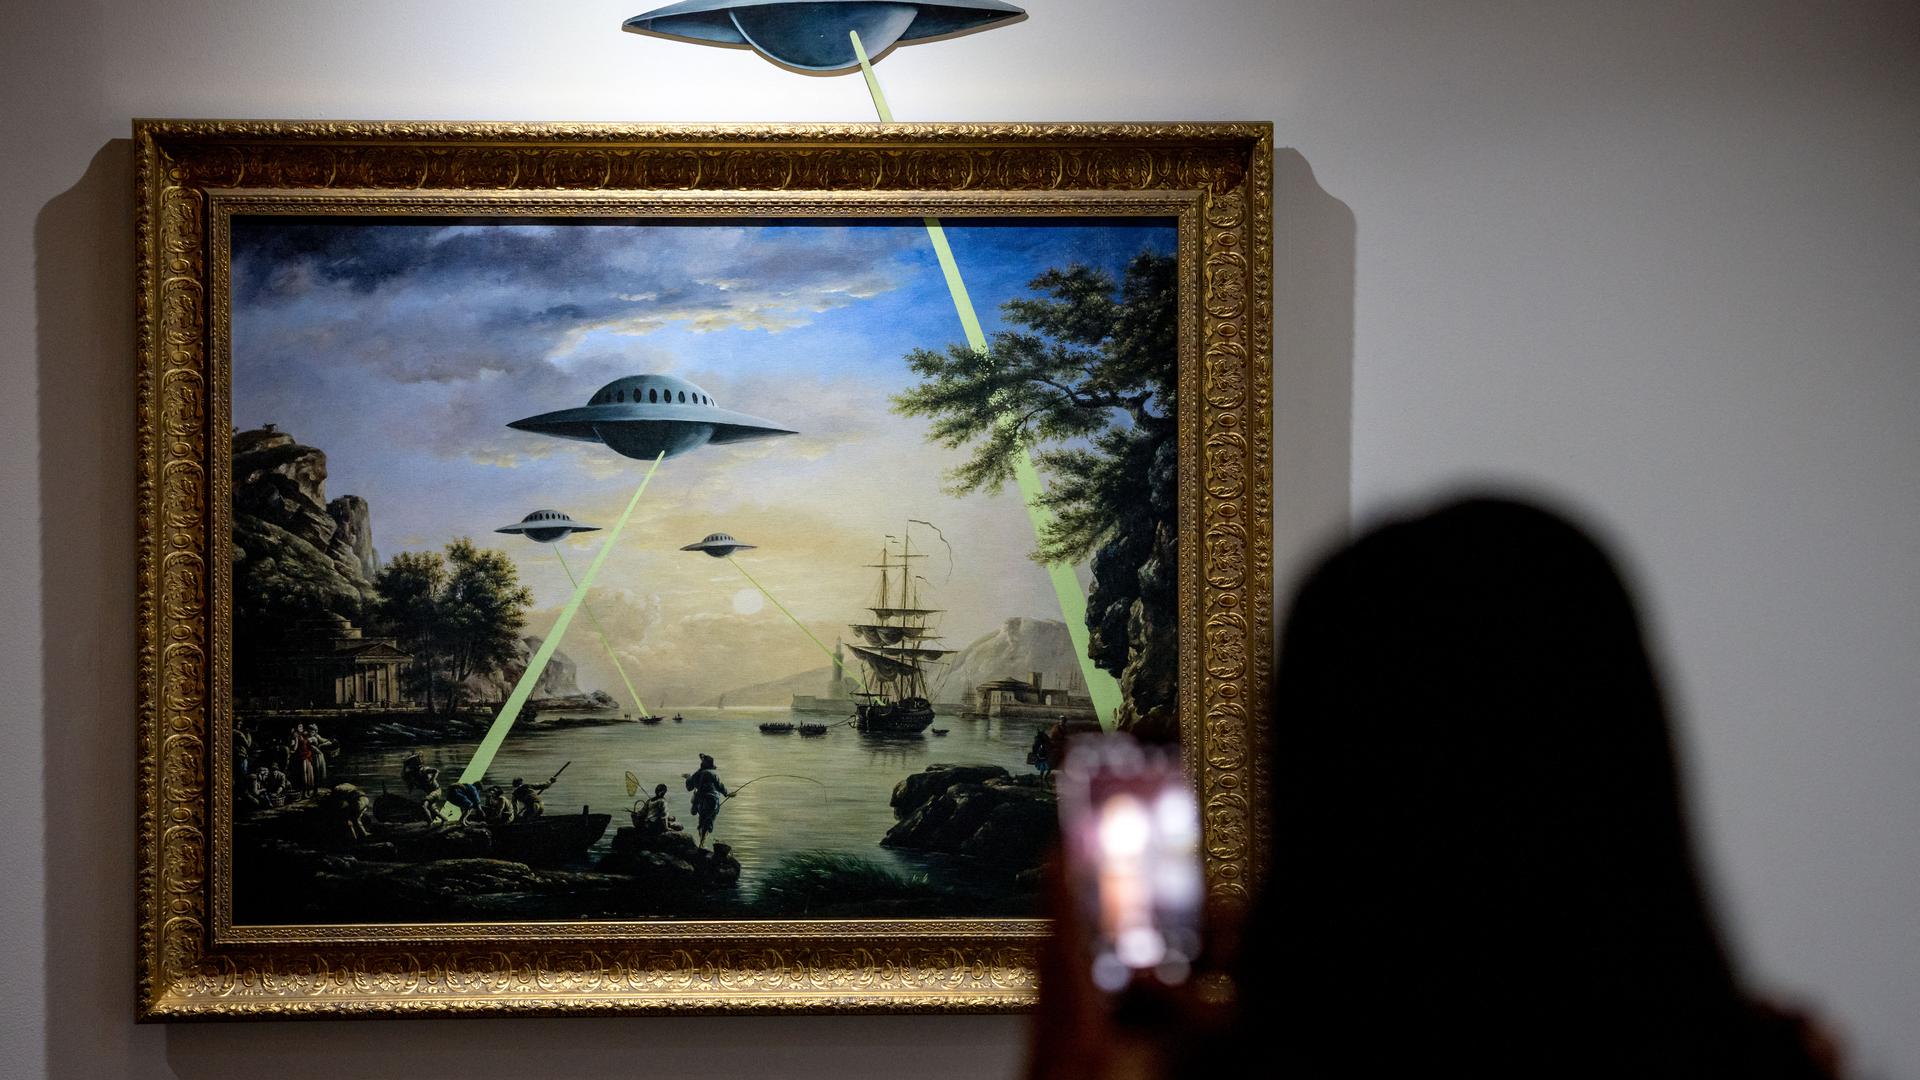 Faszinierendes Thema für viele Menschen: Außerirdisches Leben existiert wahrscheinlich in den Tiefen des Alls, dagegen sind UFO-Besuche auf der Erde – hier vom britischen Künstler Banksy dargestellt – extrem unwahrscheinlich.